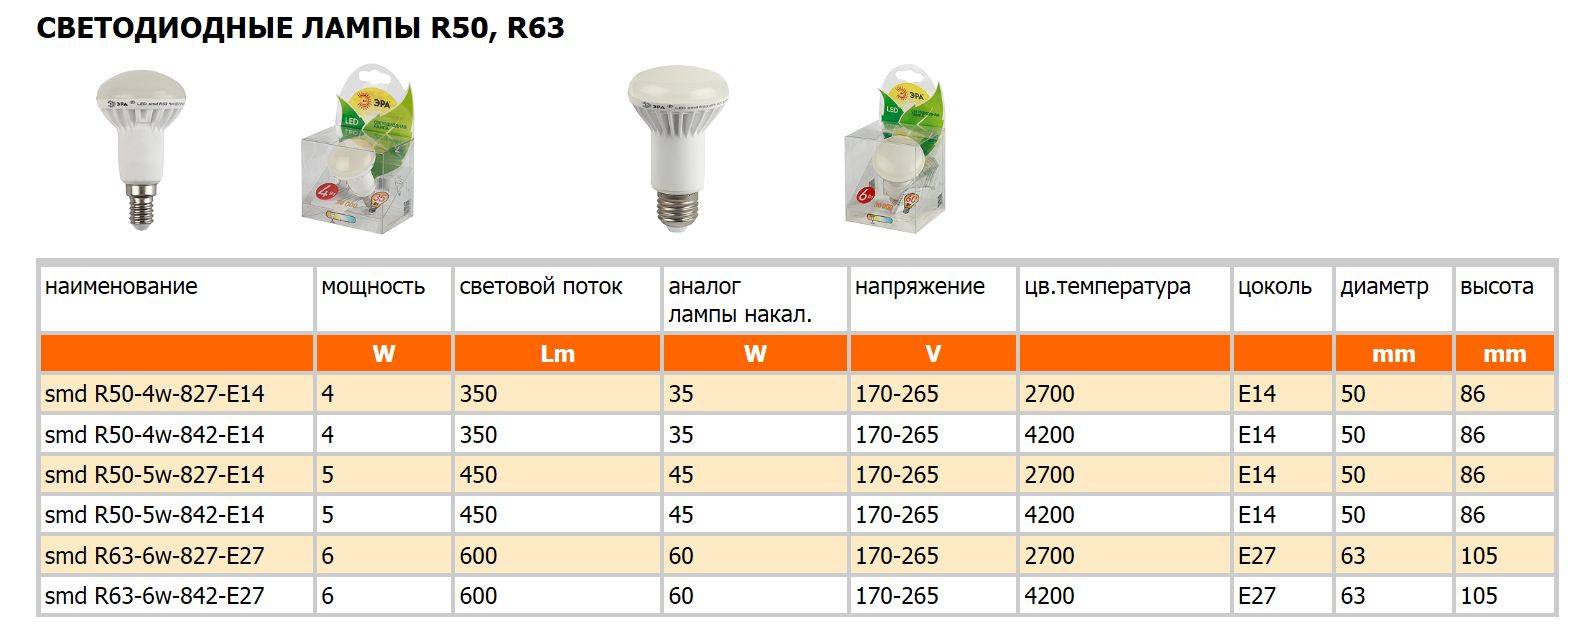 Лампа светодиодная Е40: устройство, характеристики, область применения